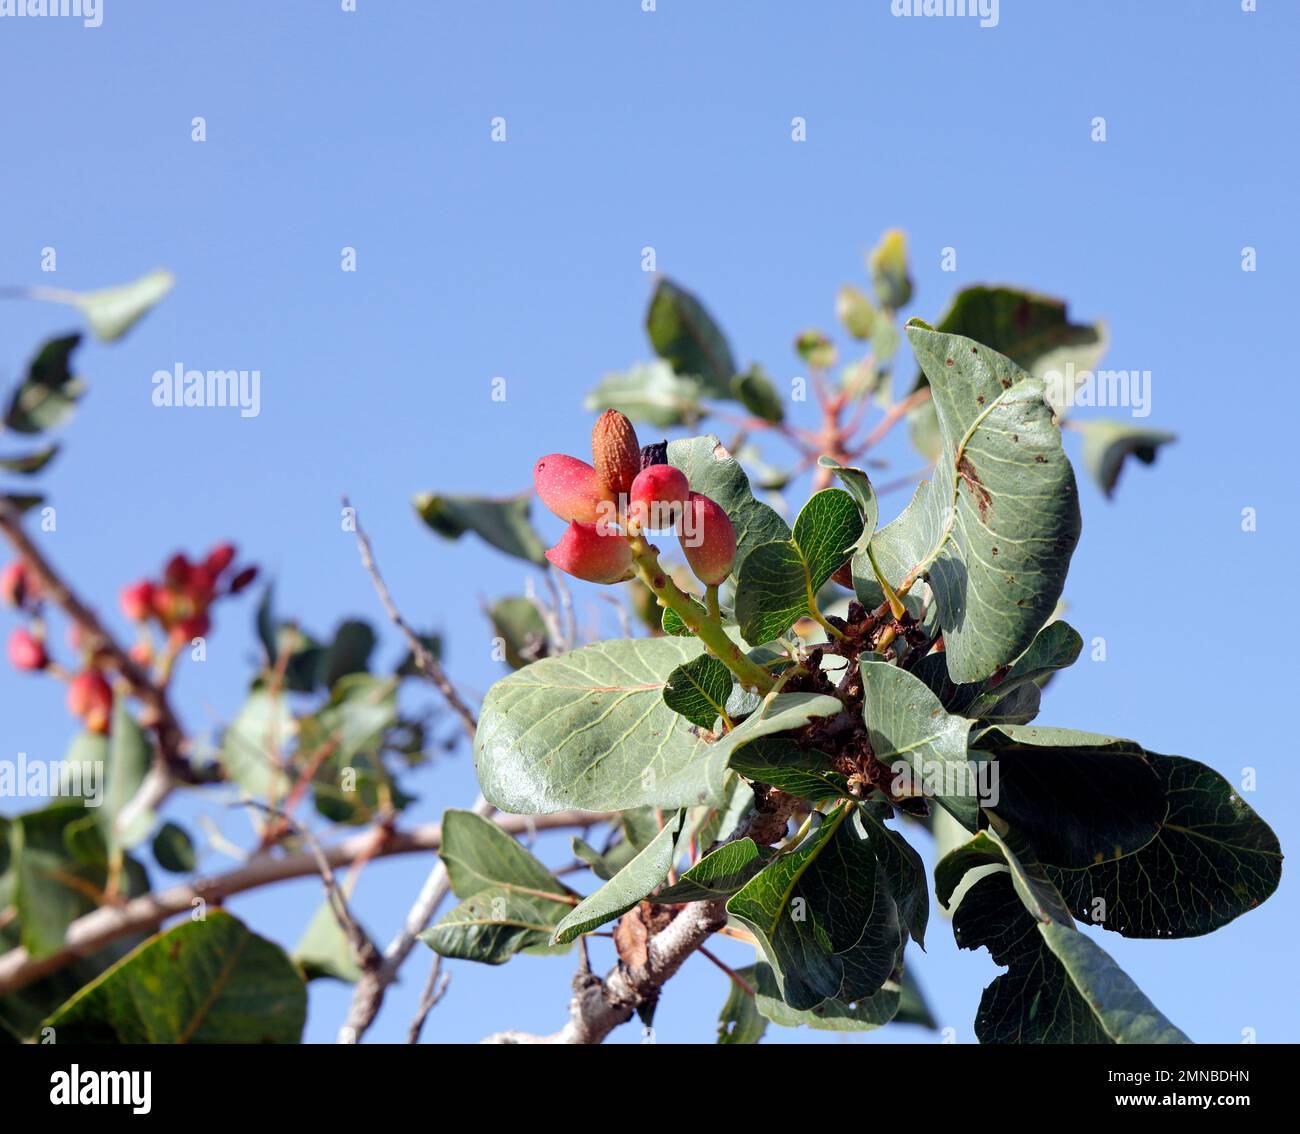 Pistaches cultivées mûrissant sur l'arbre contre le ciel bleu, île de Lesbos septembre / octobre 2022.Pistacia vera, famille de noix de cajou Banque D'Images